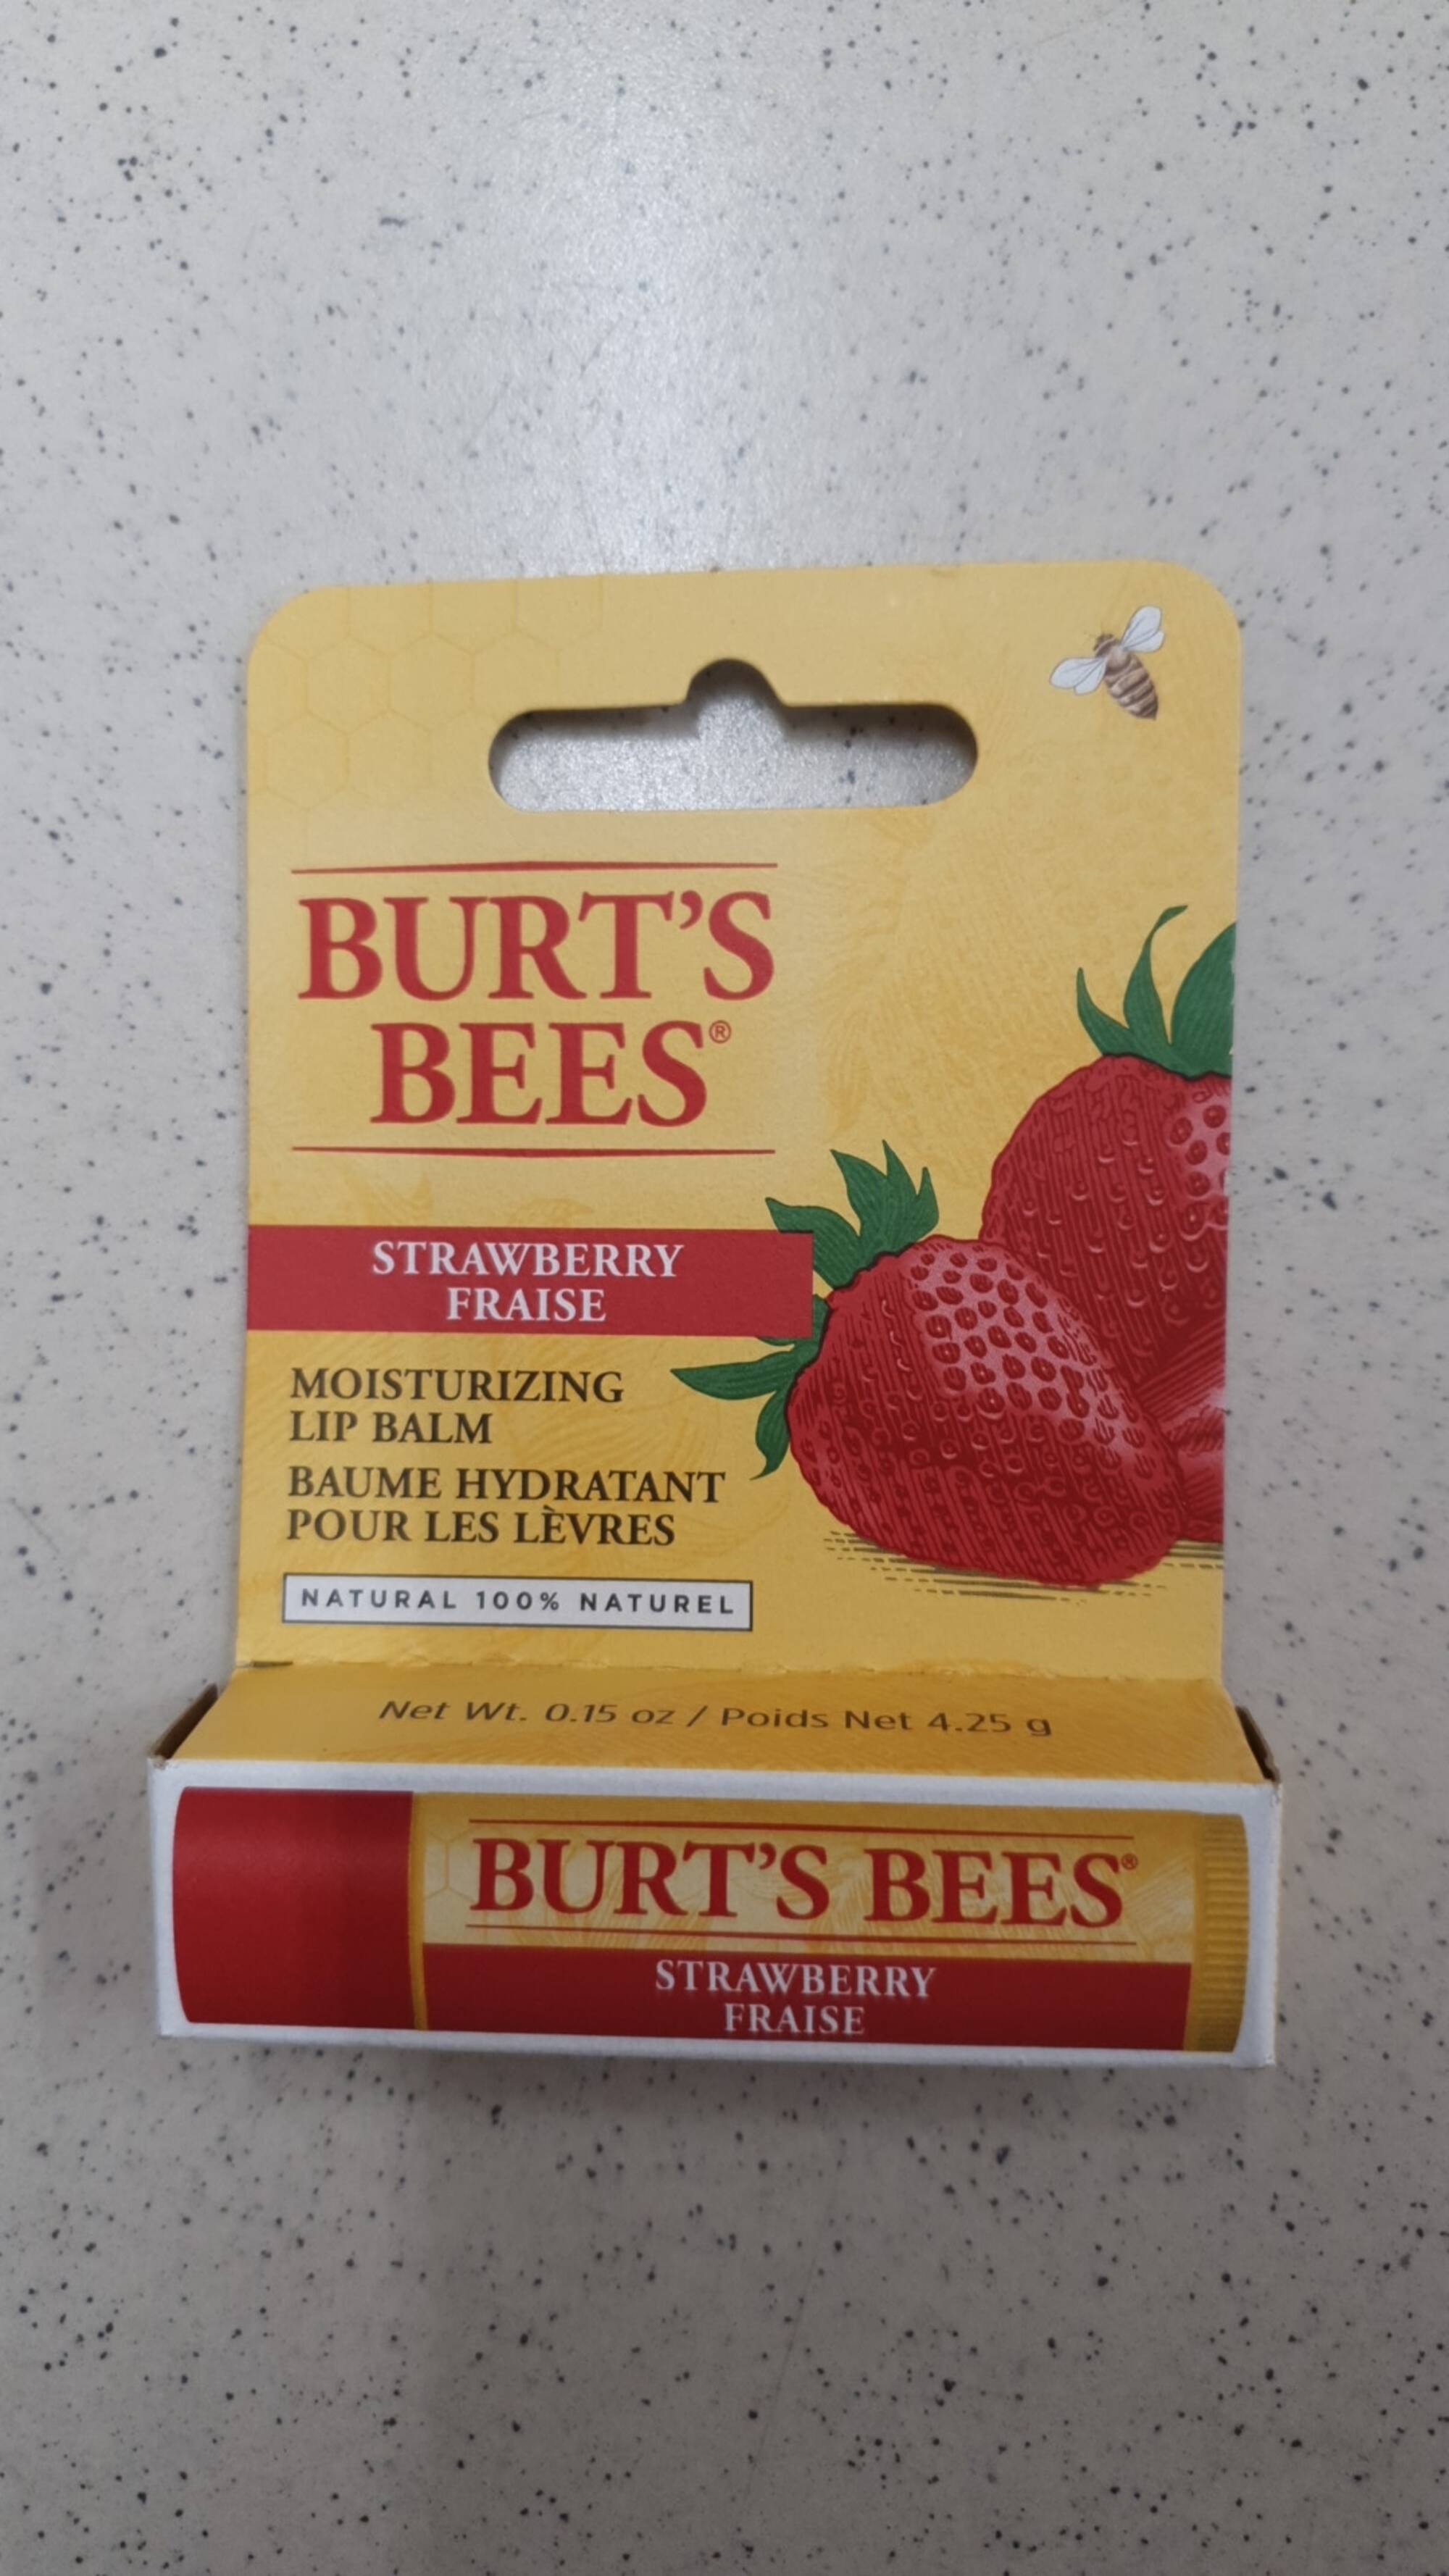 BURT'S BEES - Fraise - Baume hydratant pour les lèvres